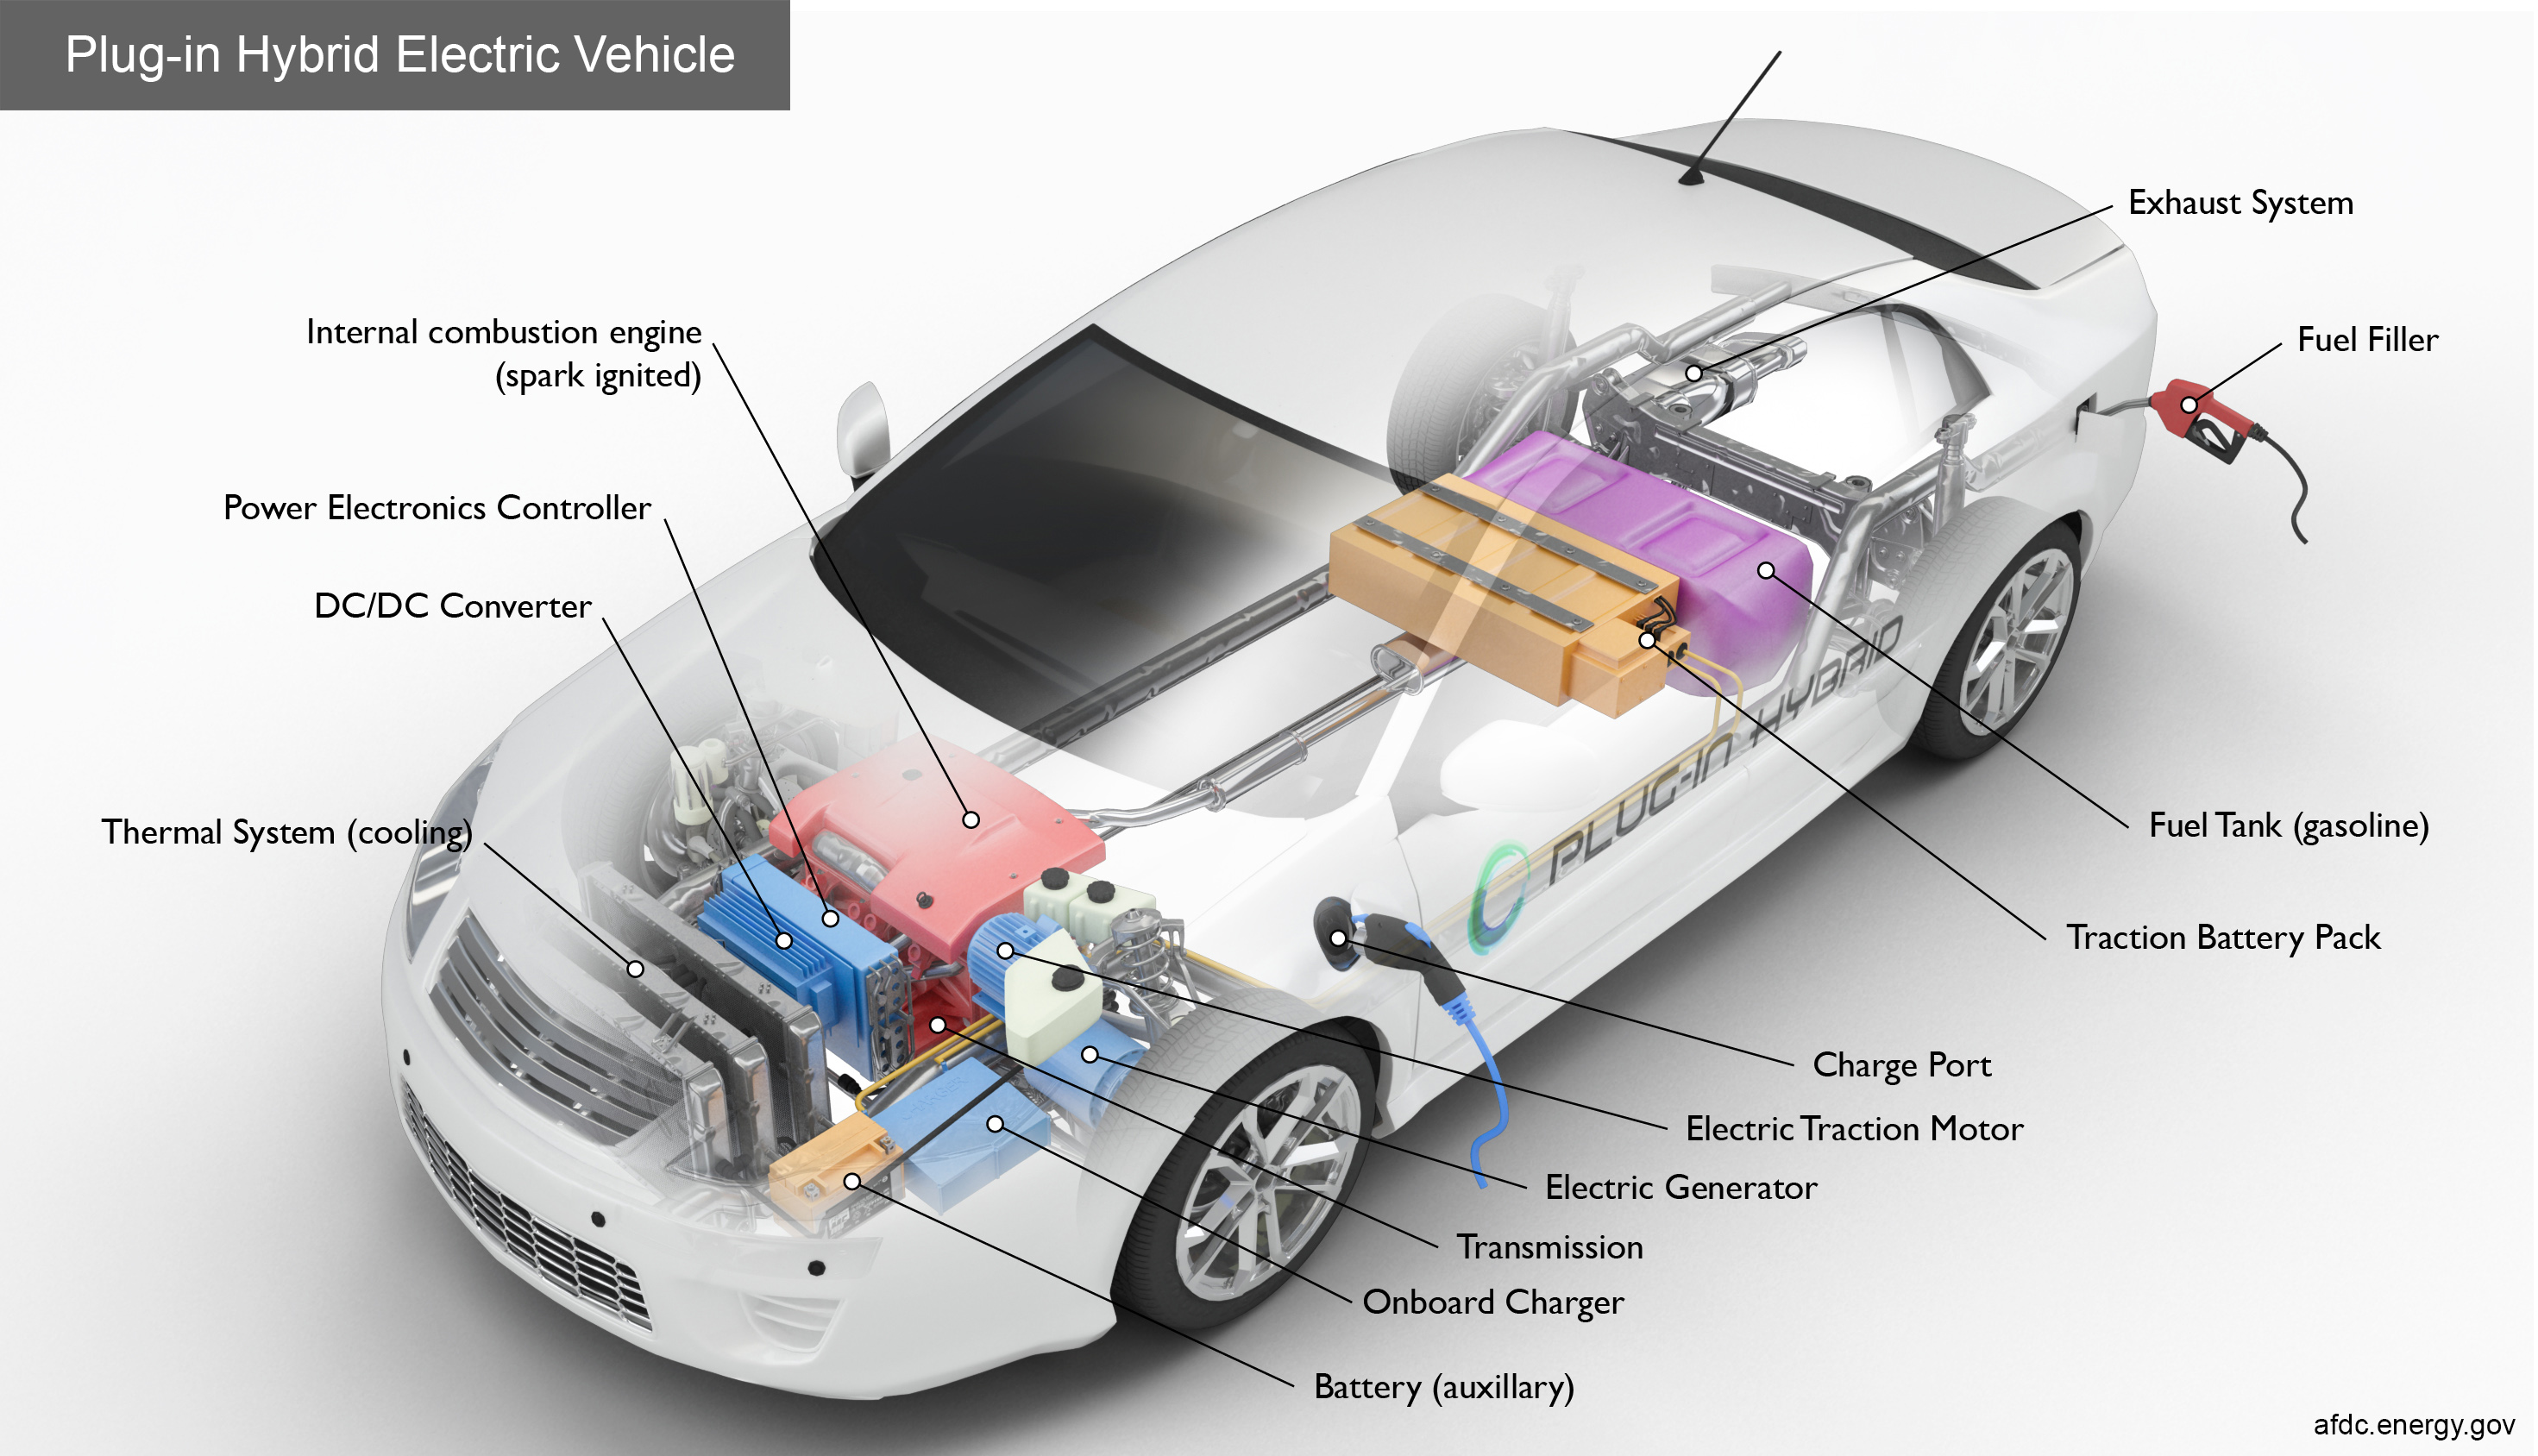 Batteries, EV West - Electric Vehicle Parts, Components, EVSE